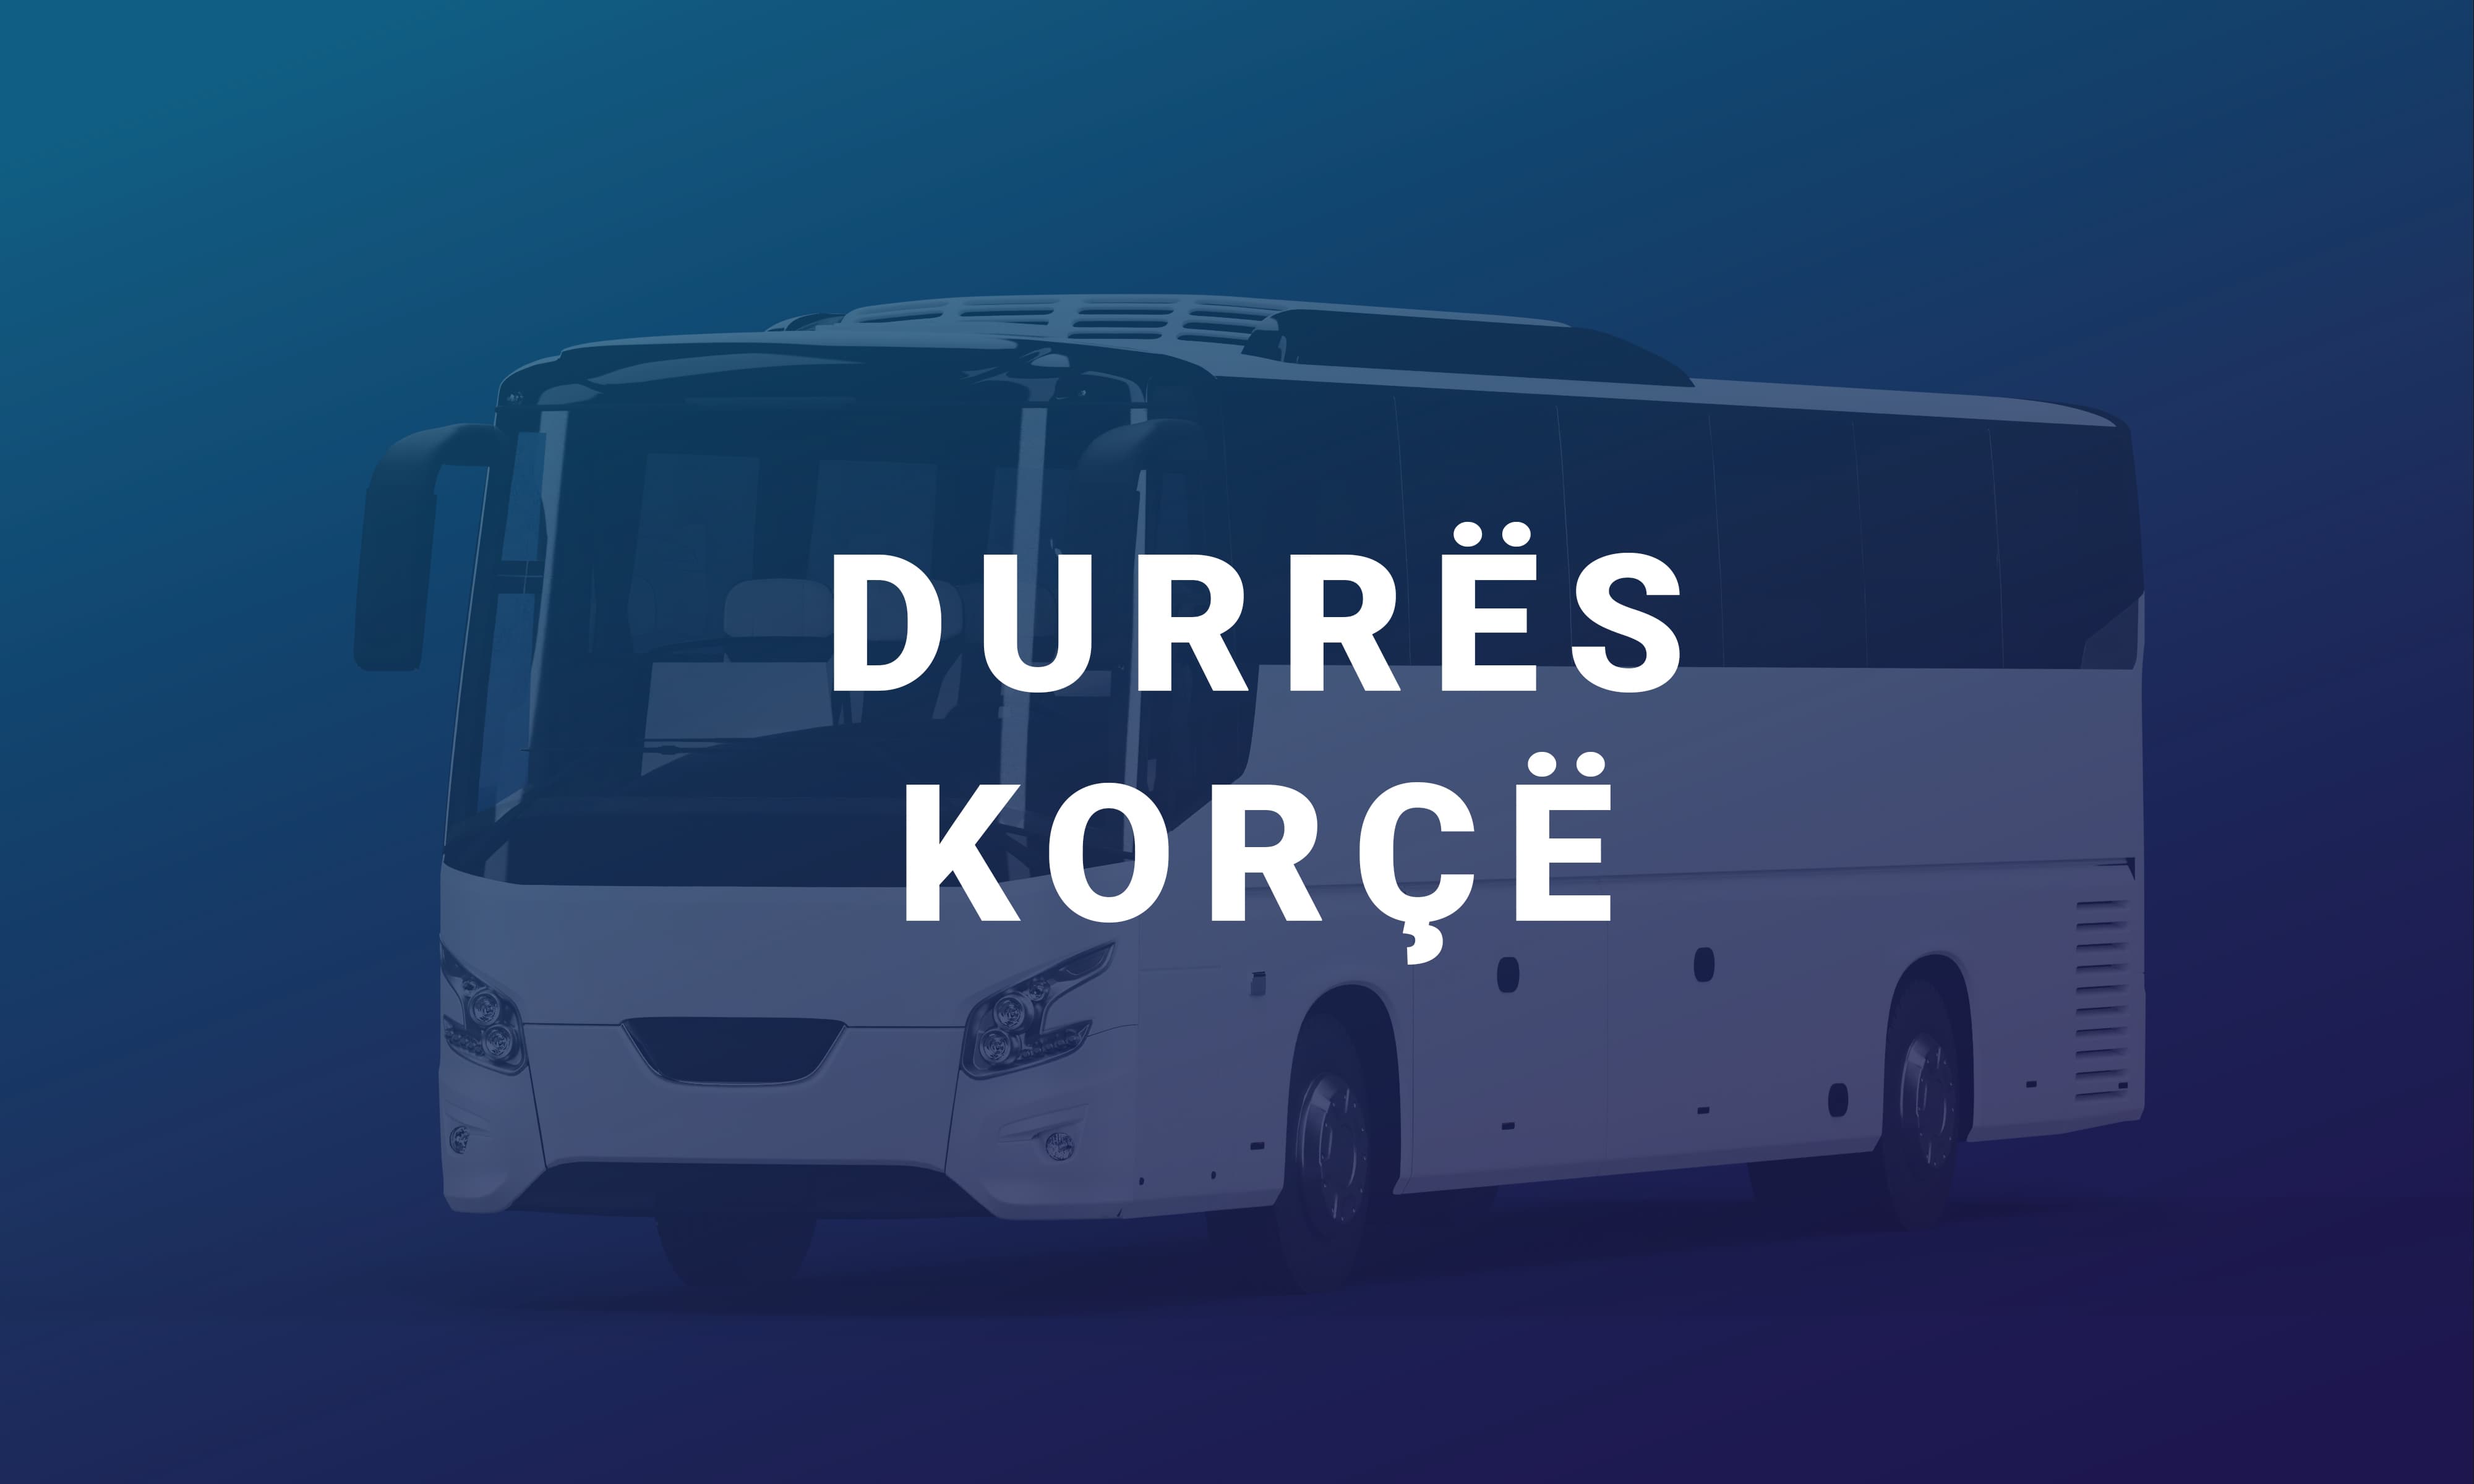 Durrës-Korçë es una línea interurbana con base en Durrës. Ofrece servicio de transporte todos los días por la carretera Korçë - Durrës y Durrës - Korçë.